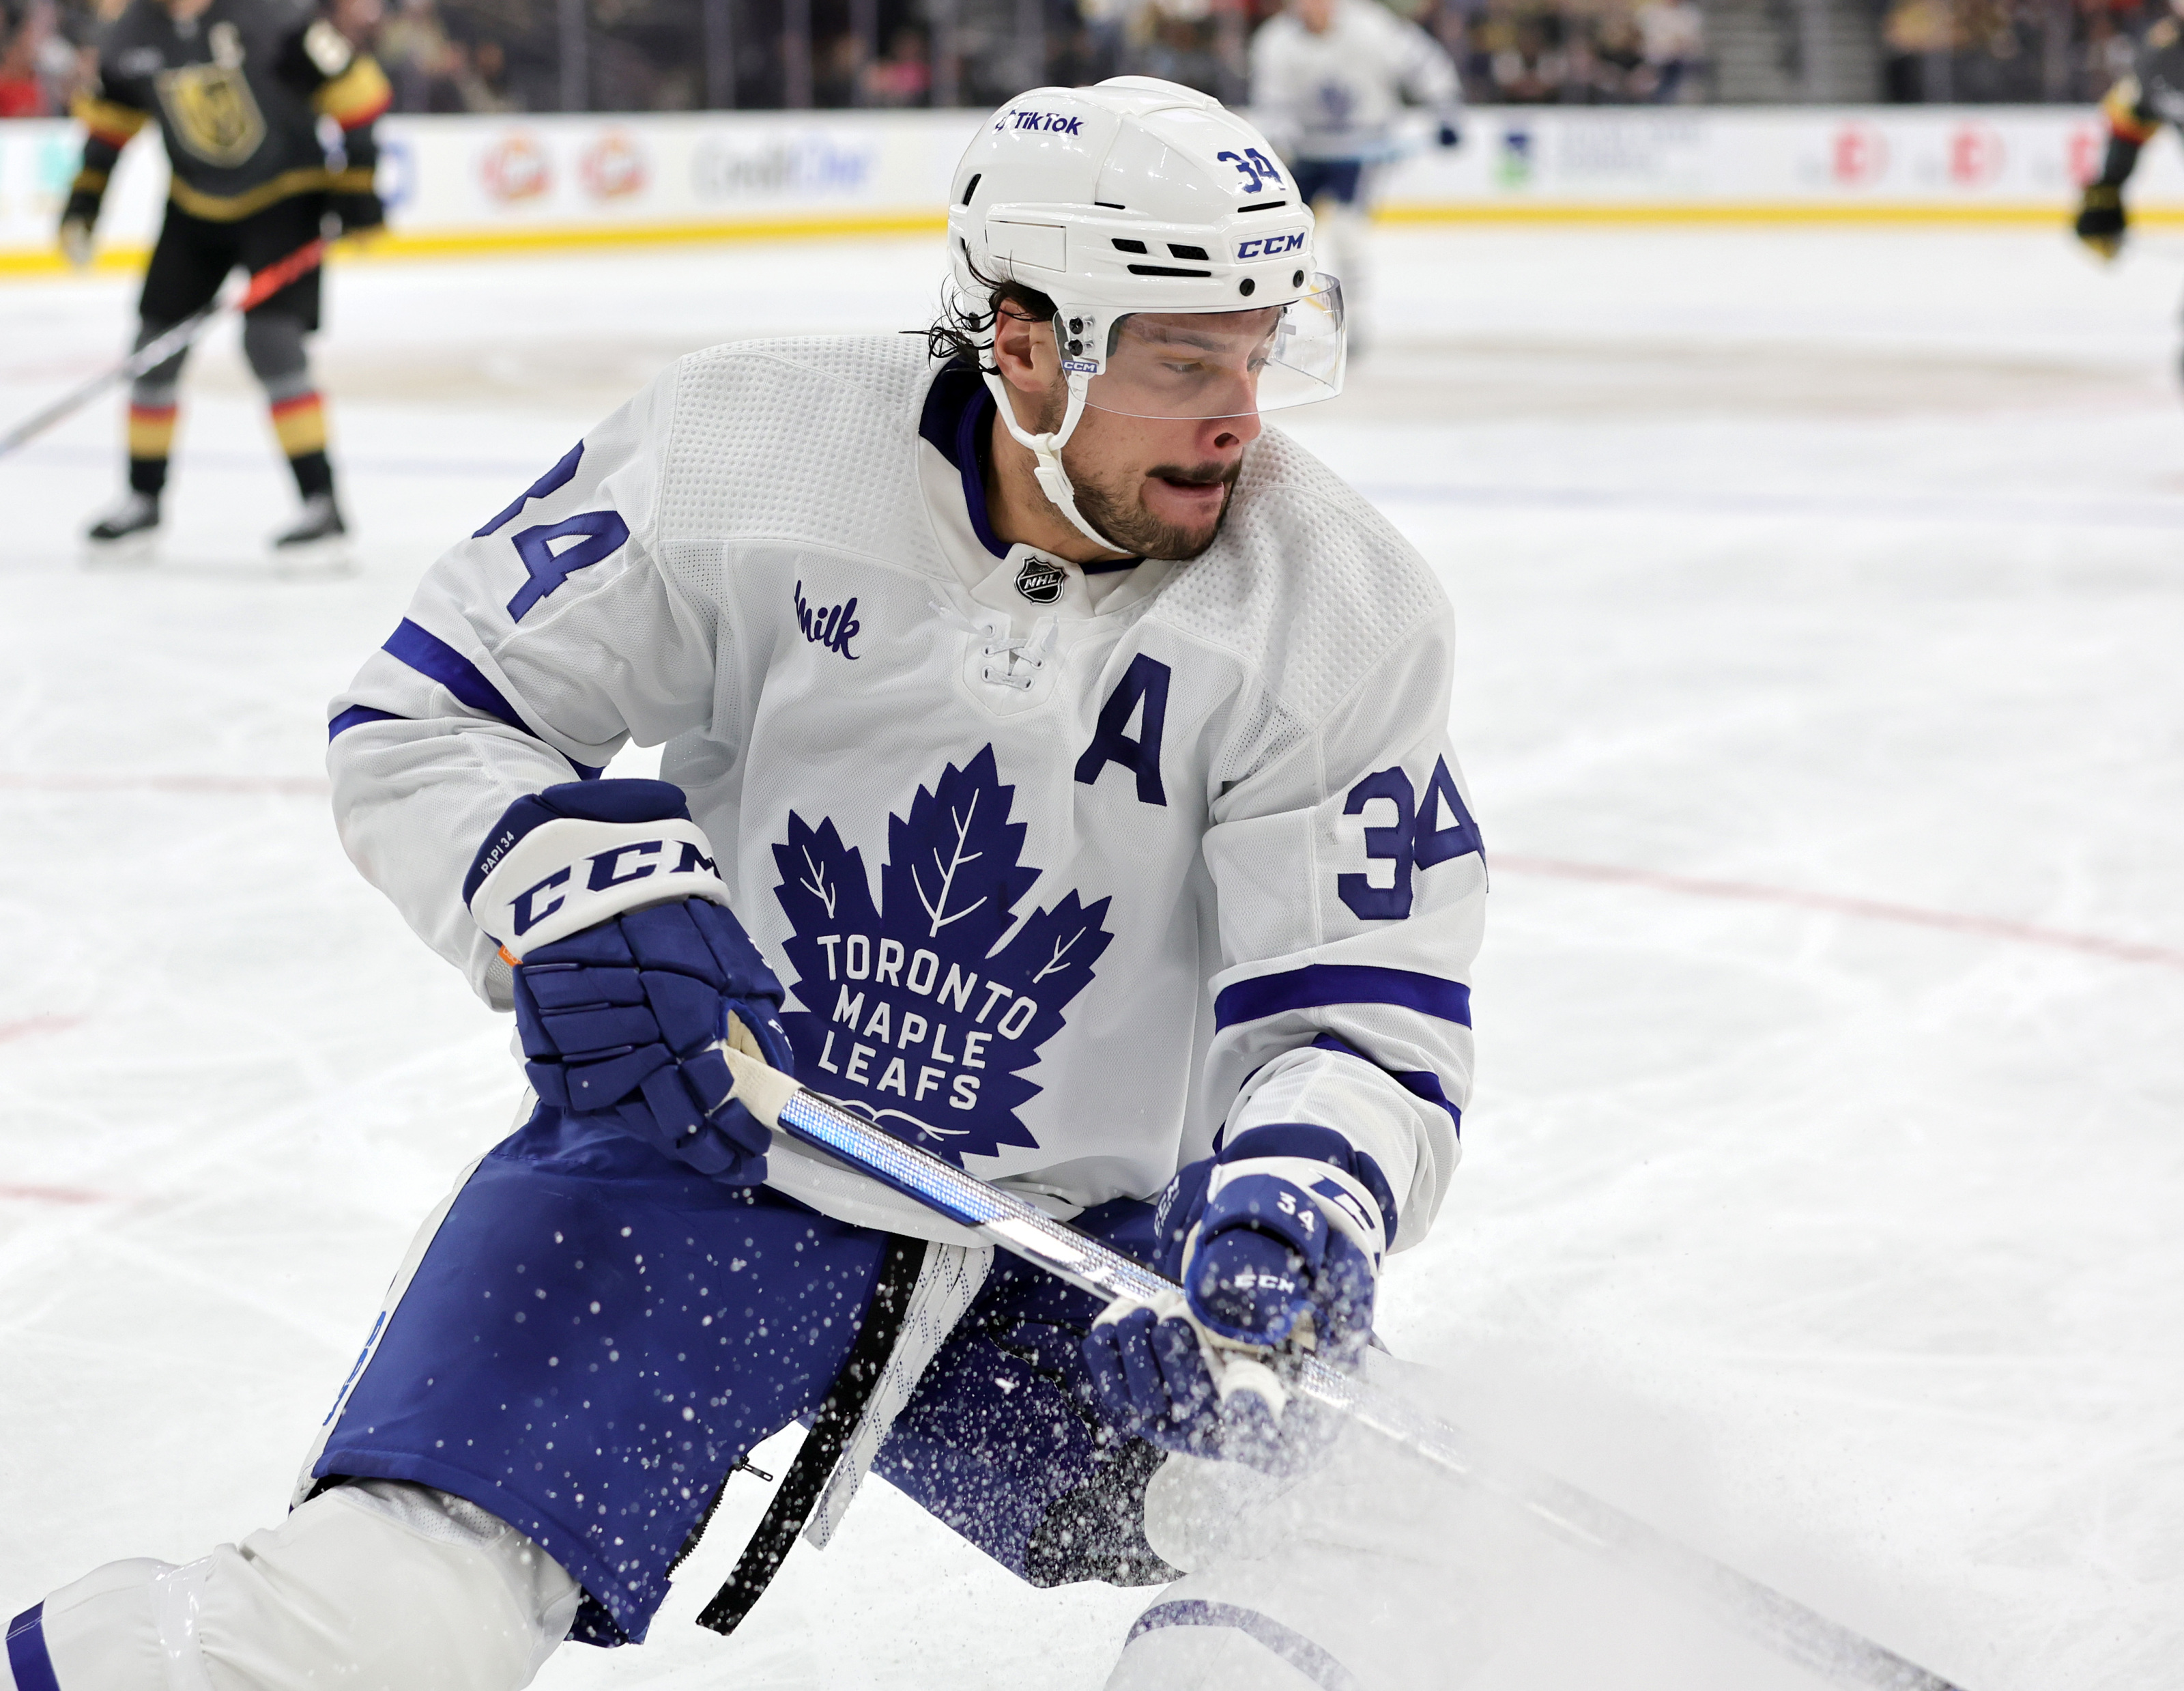 Leafs Mobile: TORONTO, ON - NOVEMBER 25: Auston Matthews #34 of